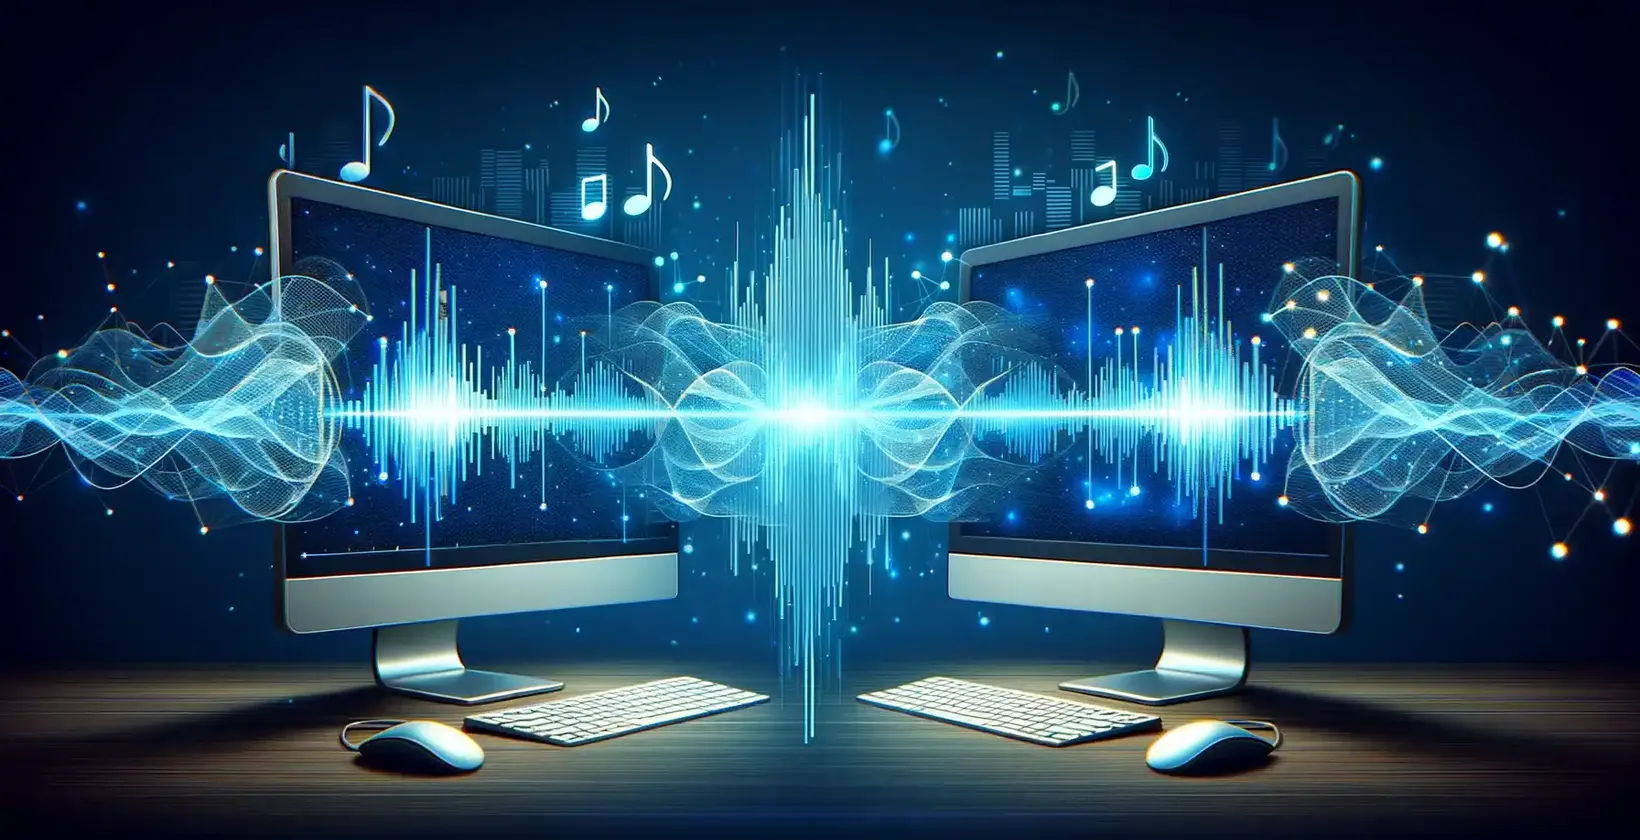 Dwa ekrany komputerowe wyświetlające nuty i fale dźwiękowe, ilustrujące wizualizację audio.